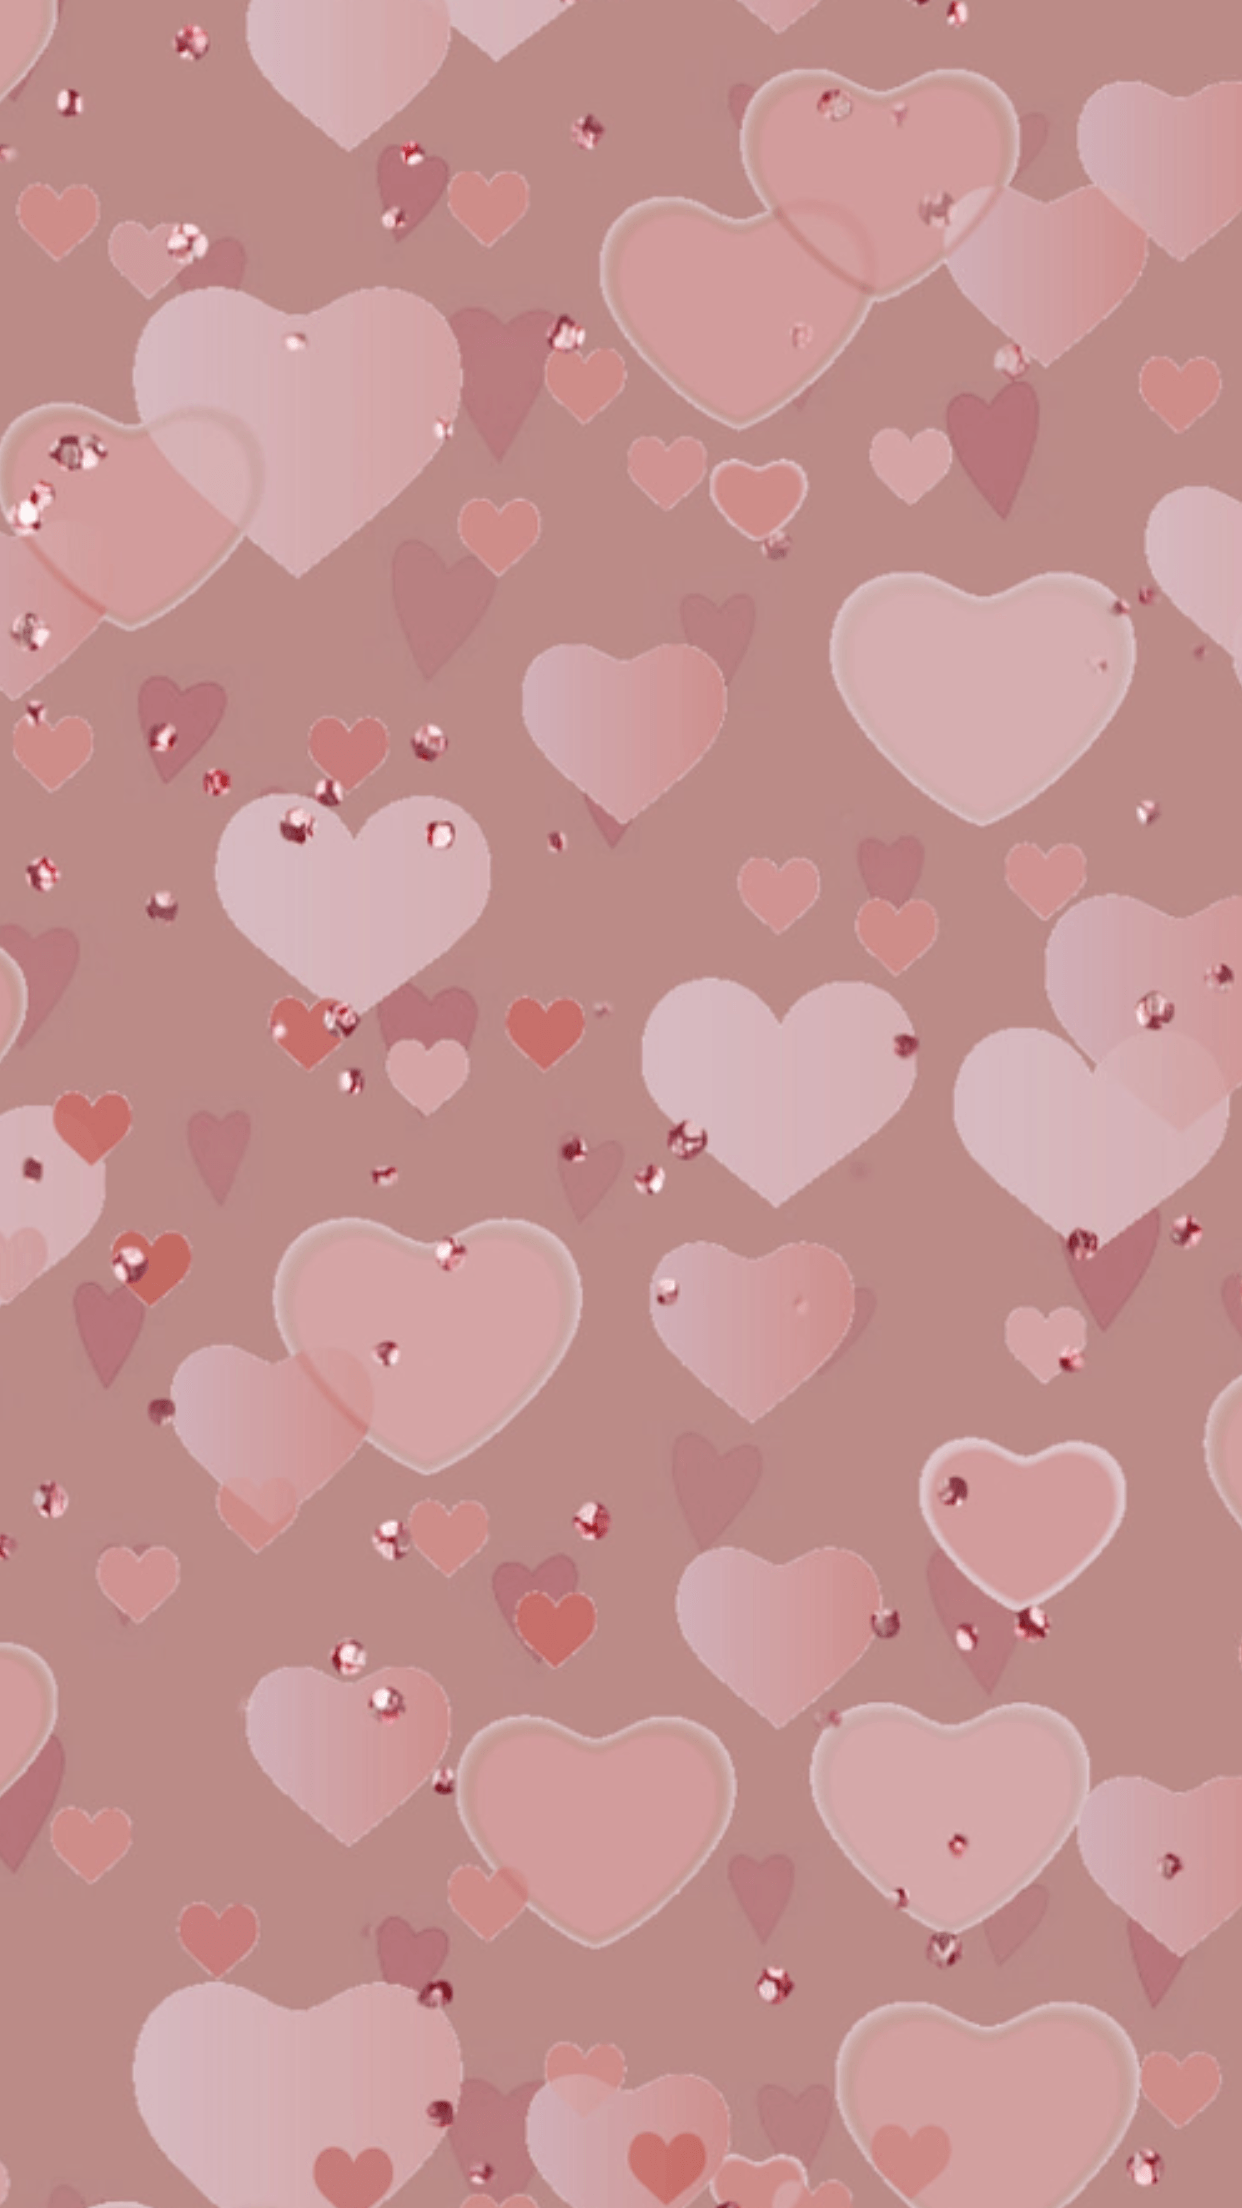 Pink heart wallpaper. Heart wallpaper, Valentines wallpaper, Pink wallpaper iphone